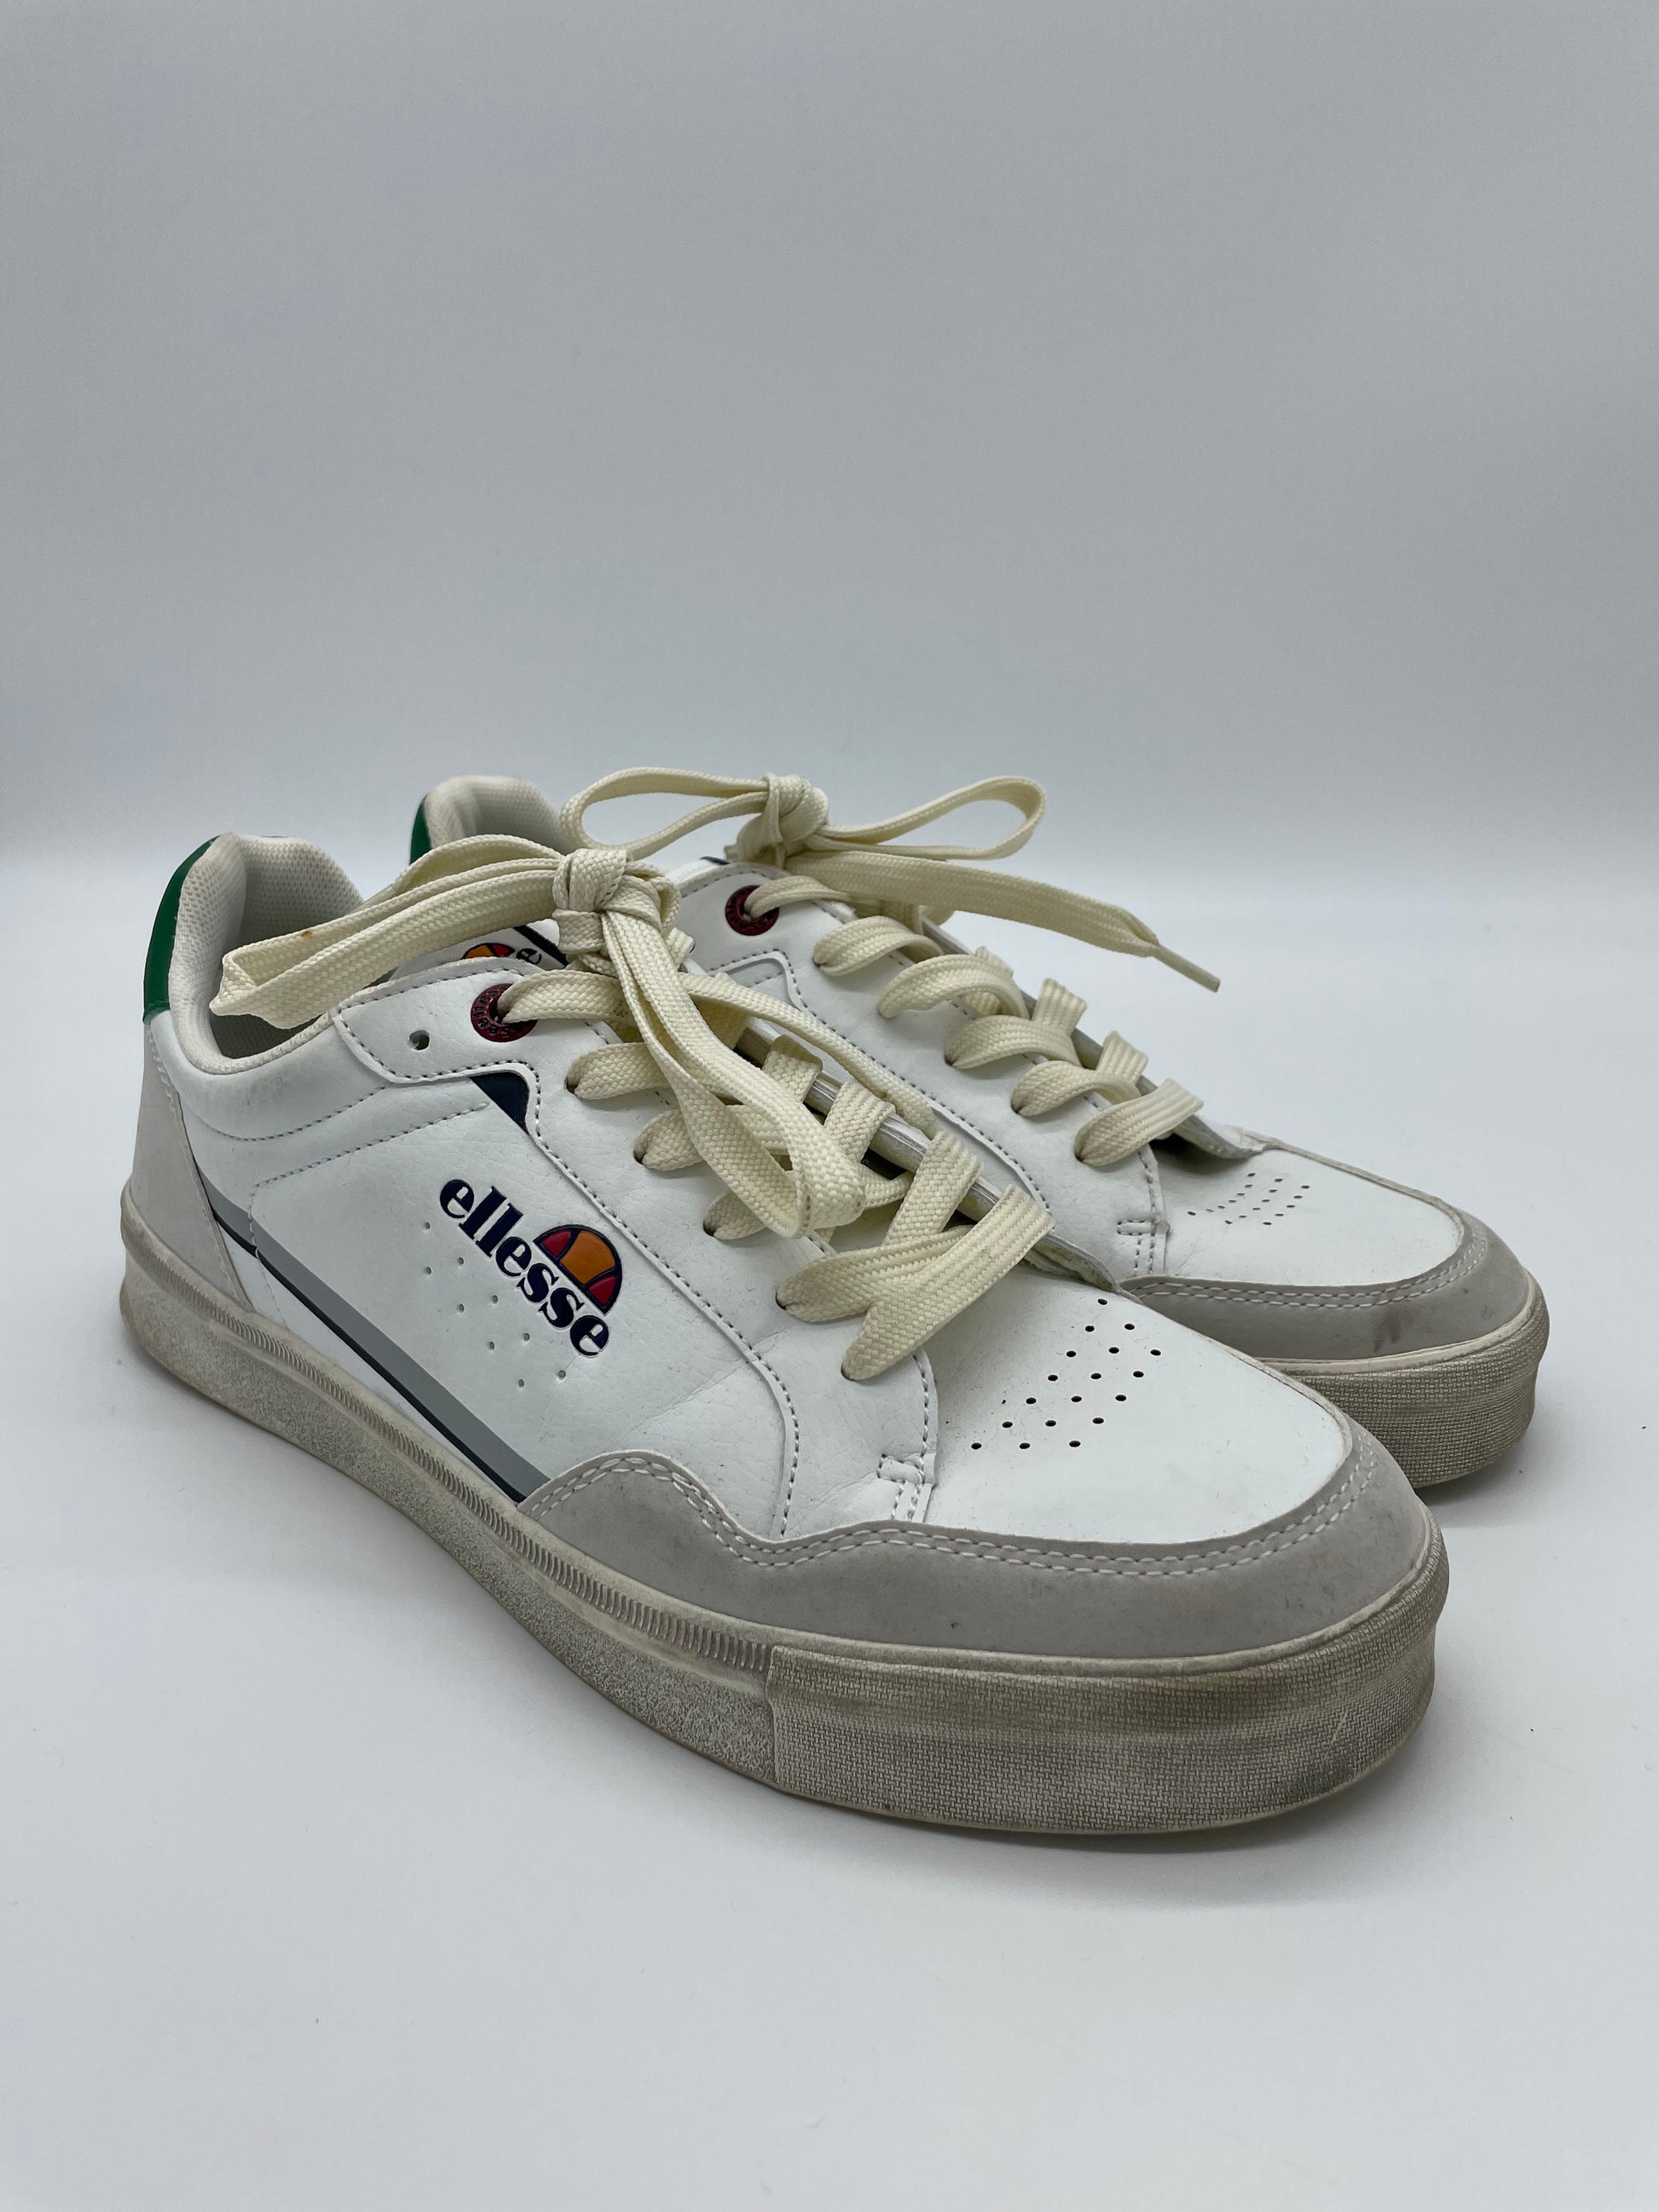 ellesse-sneakers-anni90-total-white-bianche-numero-40.5